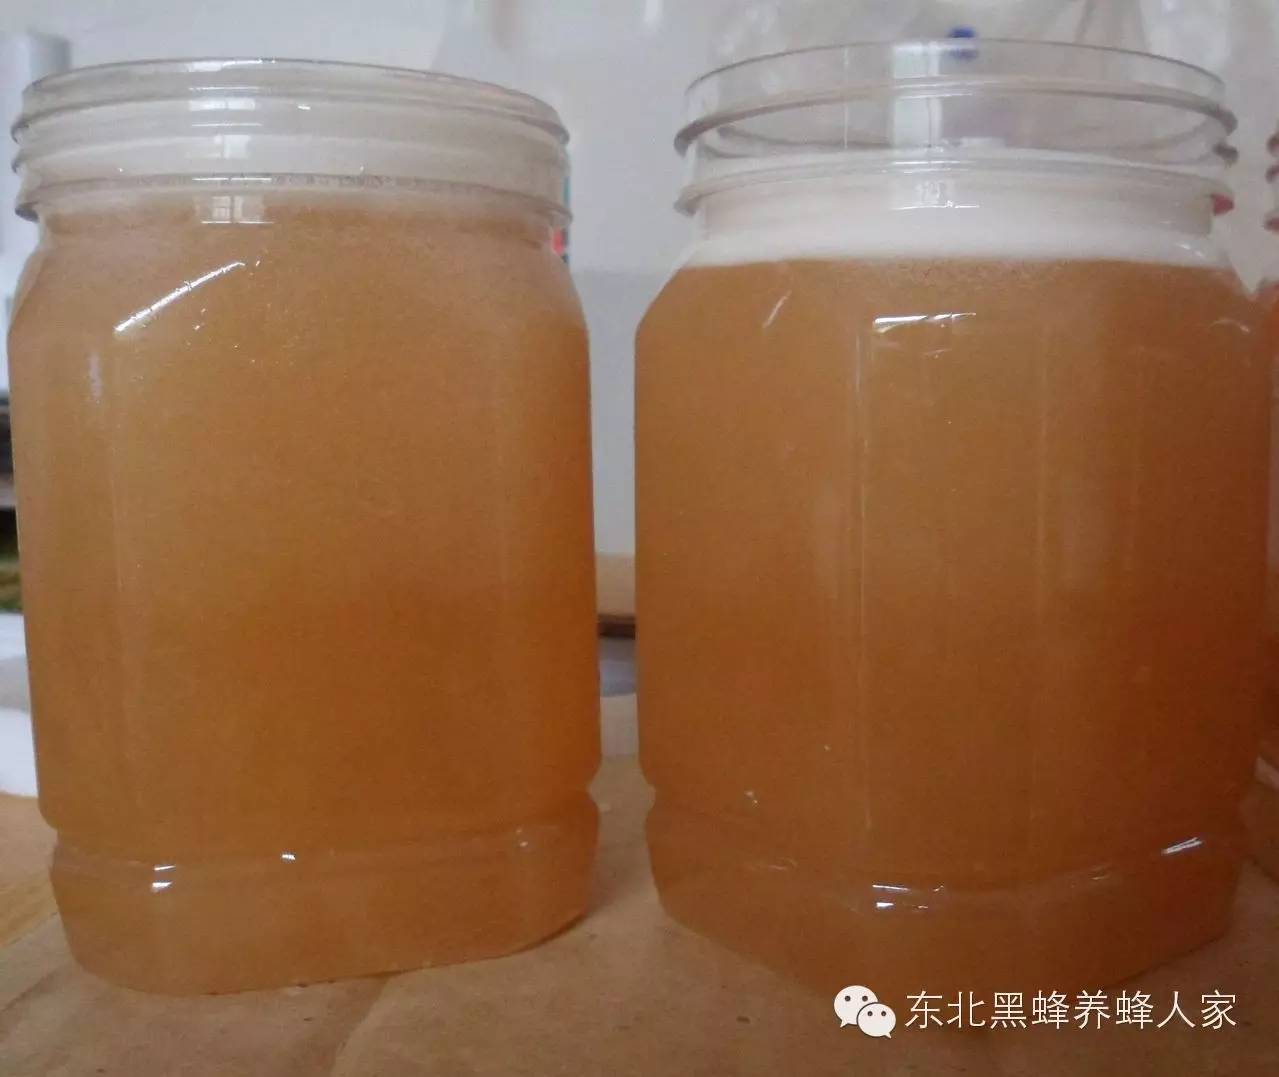 洋槐蜜和蜂蜜的区别 蛋清蜂蜜柠檬面膜 没经过加工的蜂蜜 塑料瓶装蜂蜜 蜂蜜浸泡枸杞